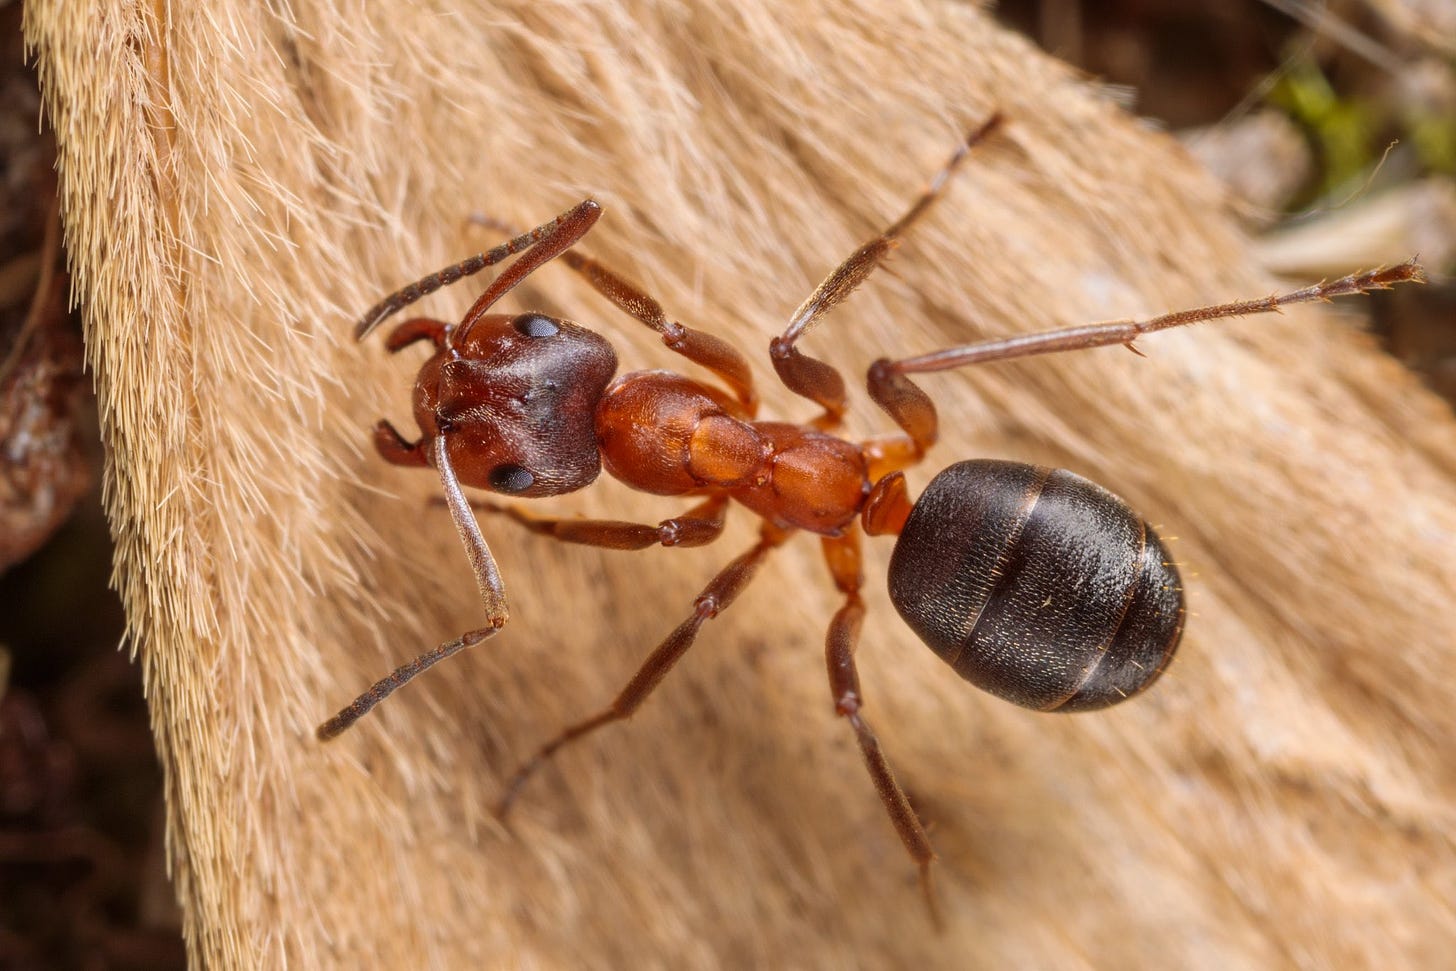 narrow-headed ant